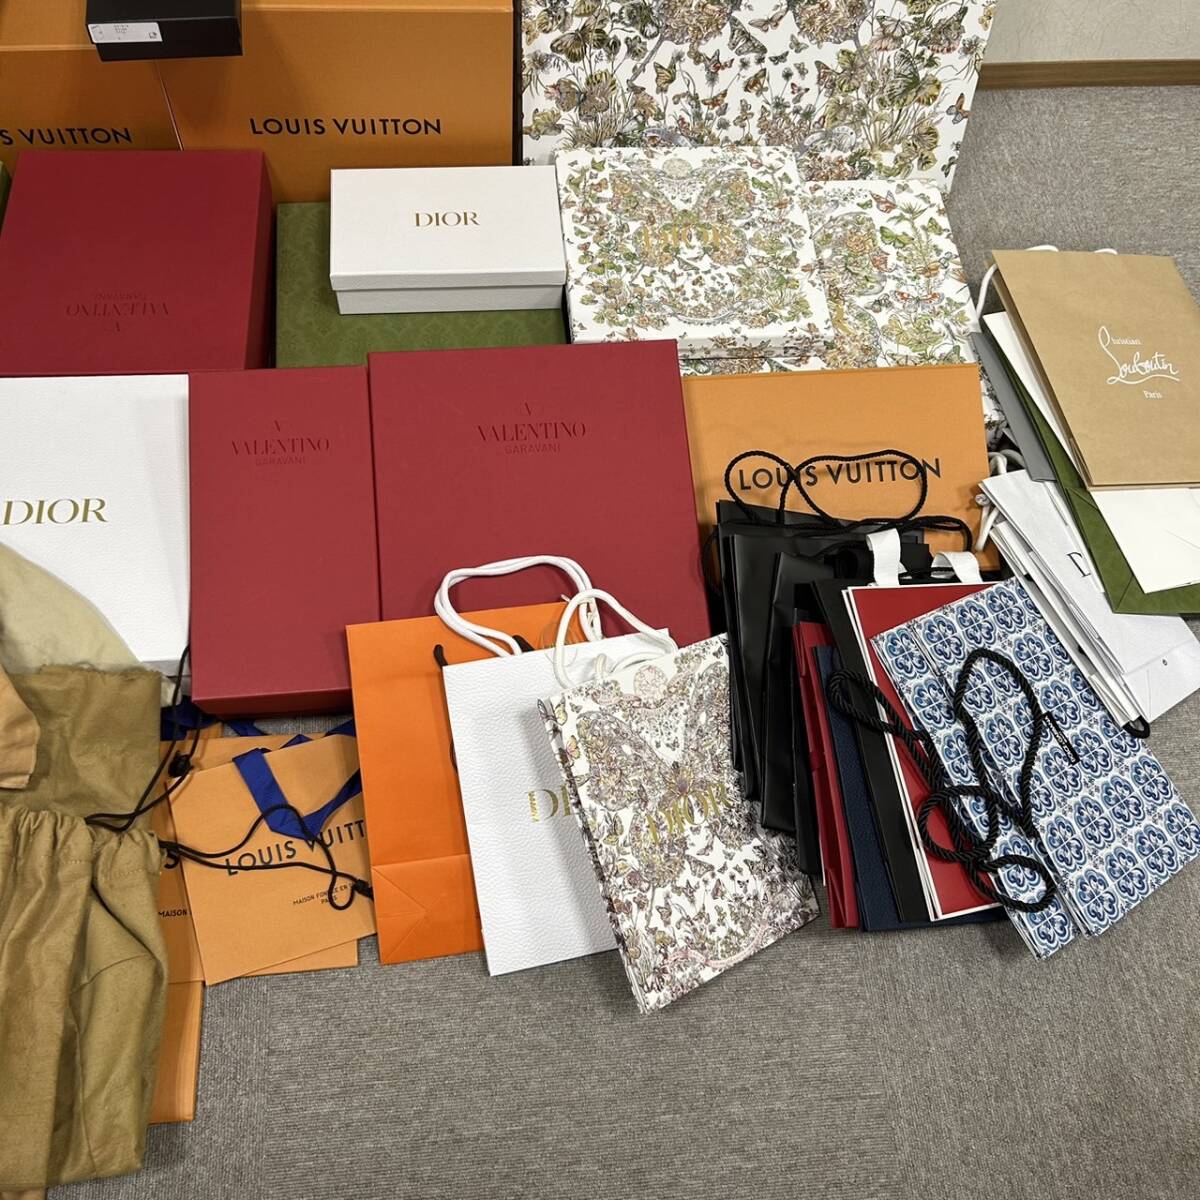 [ART-4878]1 иен старт Herms Vuitton GUCCI Dior и т.п. пустой коробка сумка для хранения бумажный пакет много . суммировать размер sama . коллекция товары долгосрочного хранения текущее состояние товар 